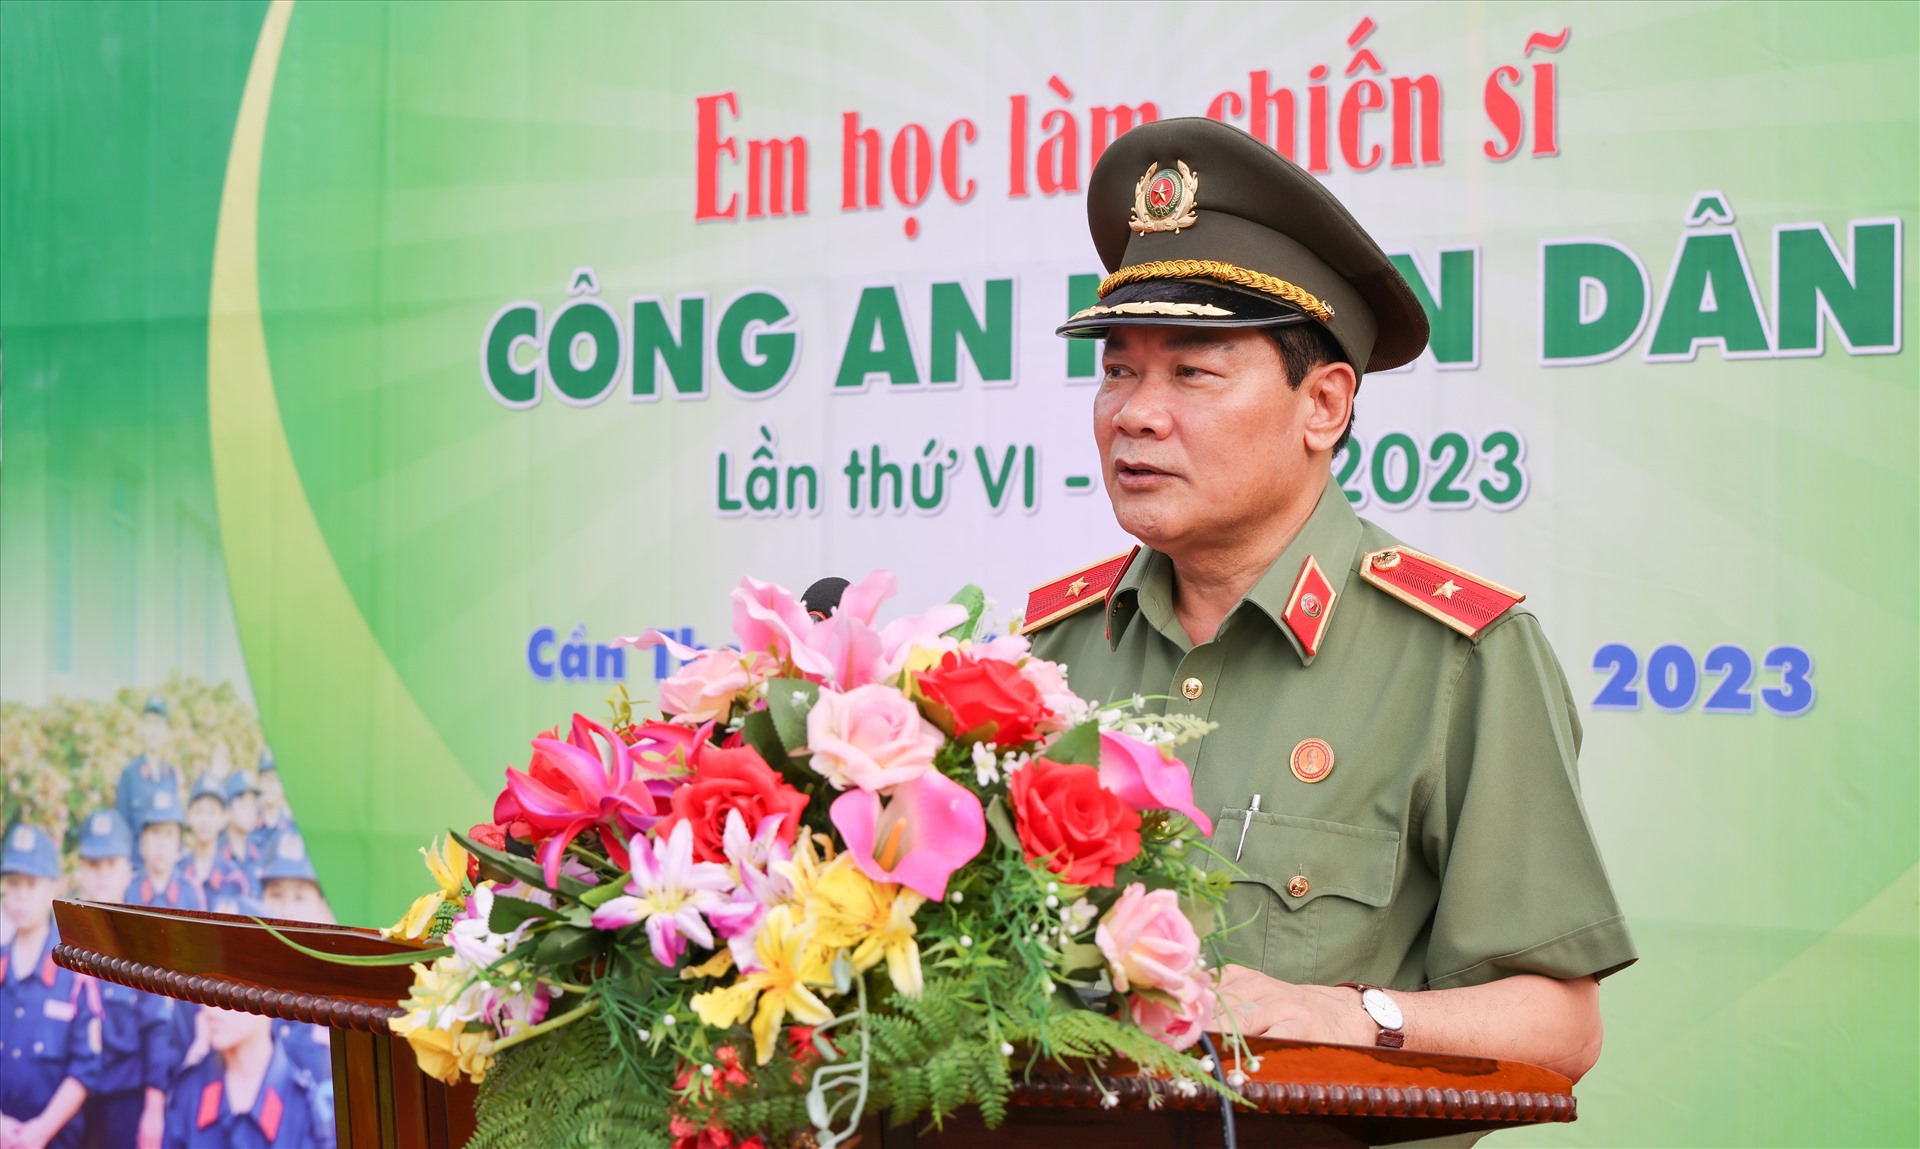 Thiếu tướng Nguyễn Văn Thuận - Giám đốc Công an TP Cần Thơ. Ảnh: Tạ Quang